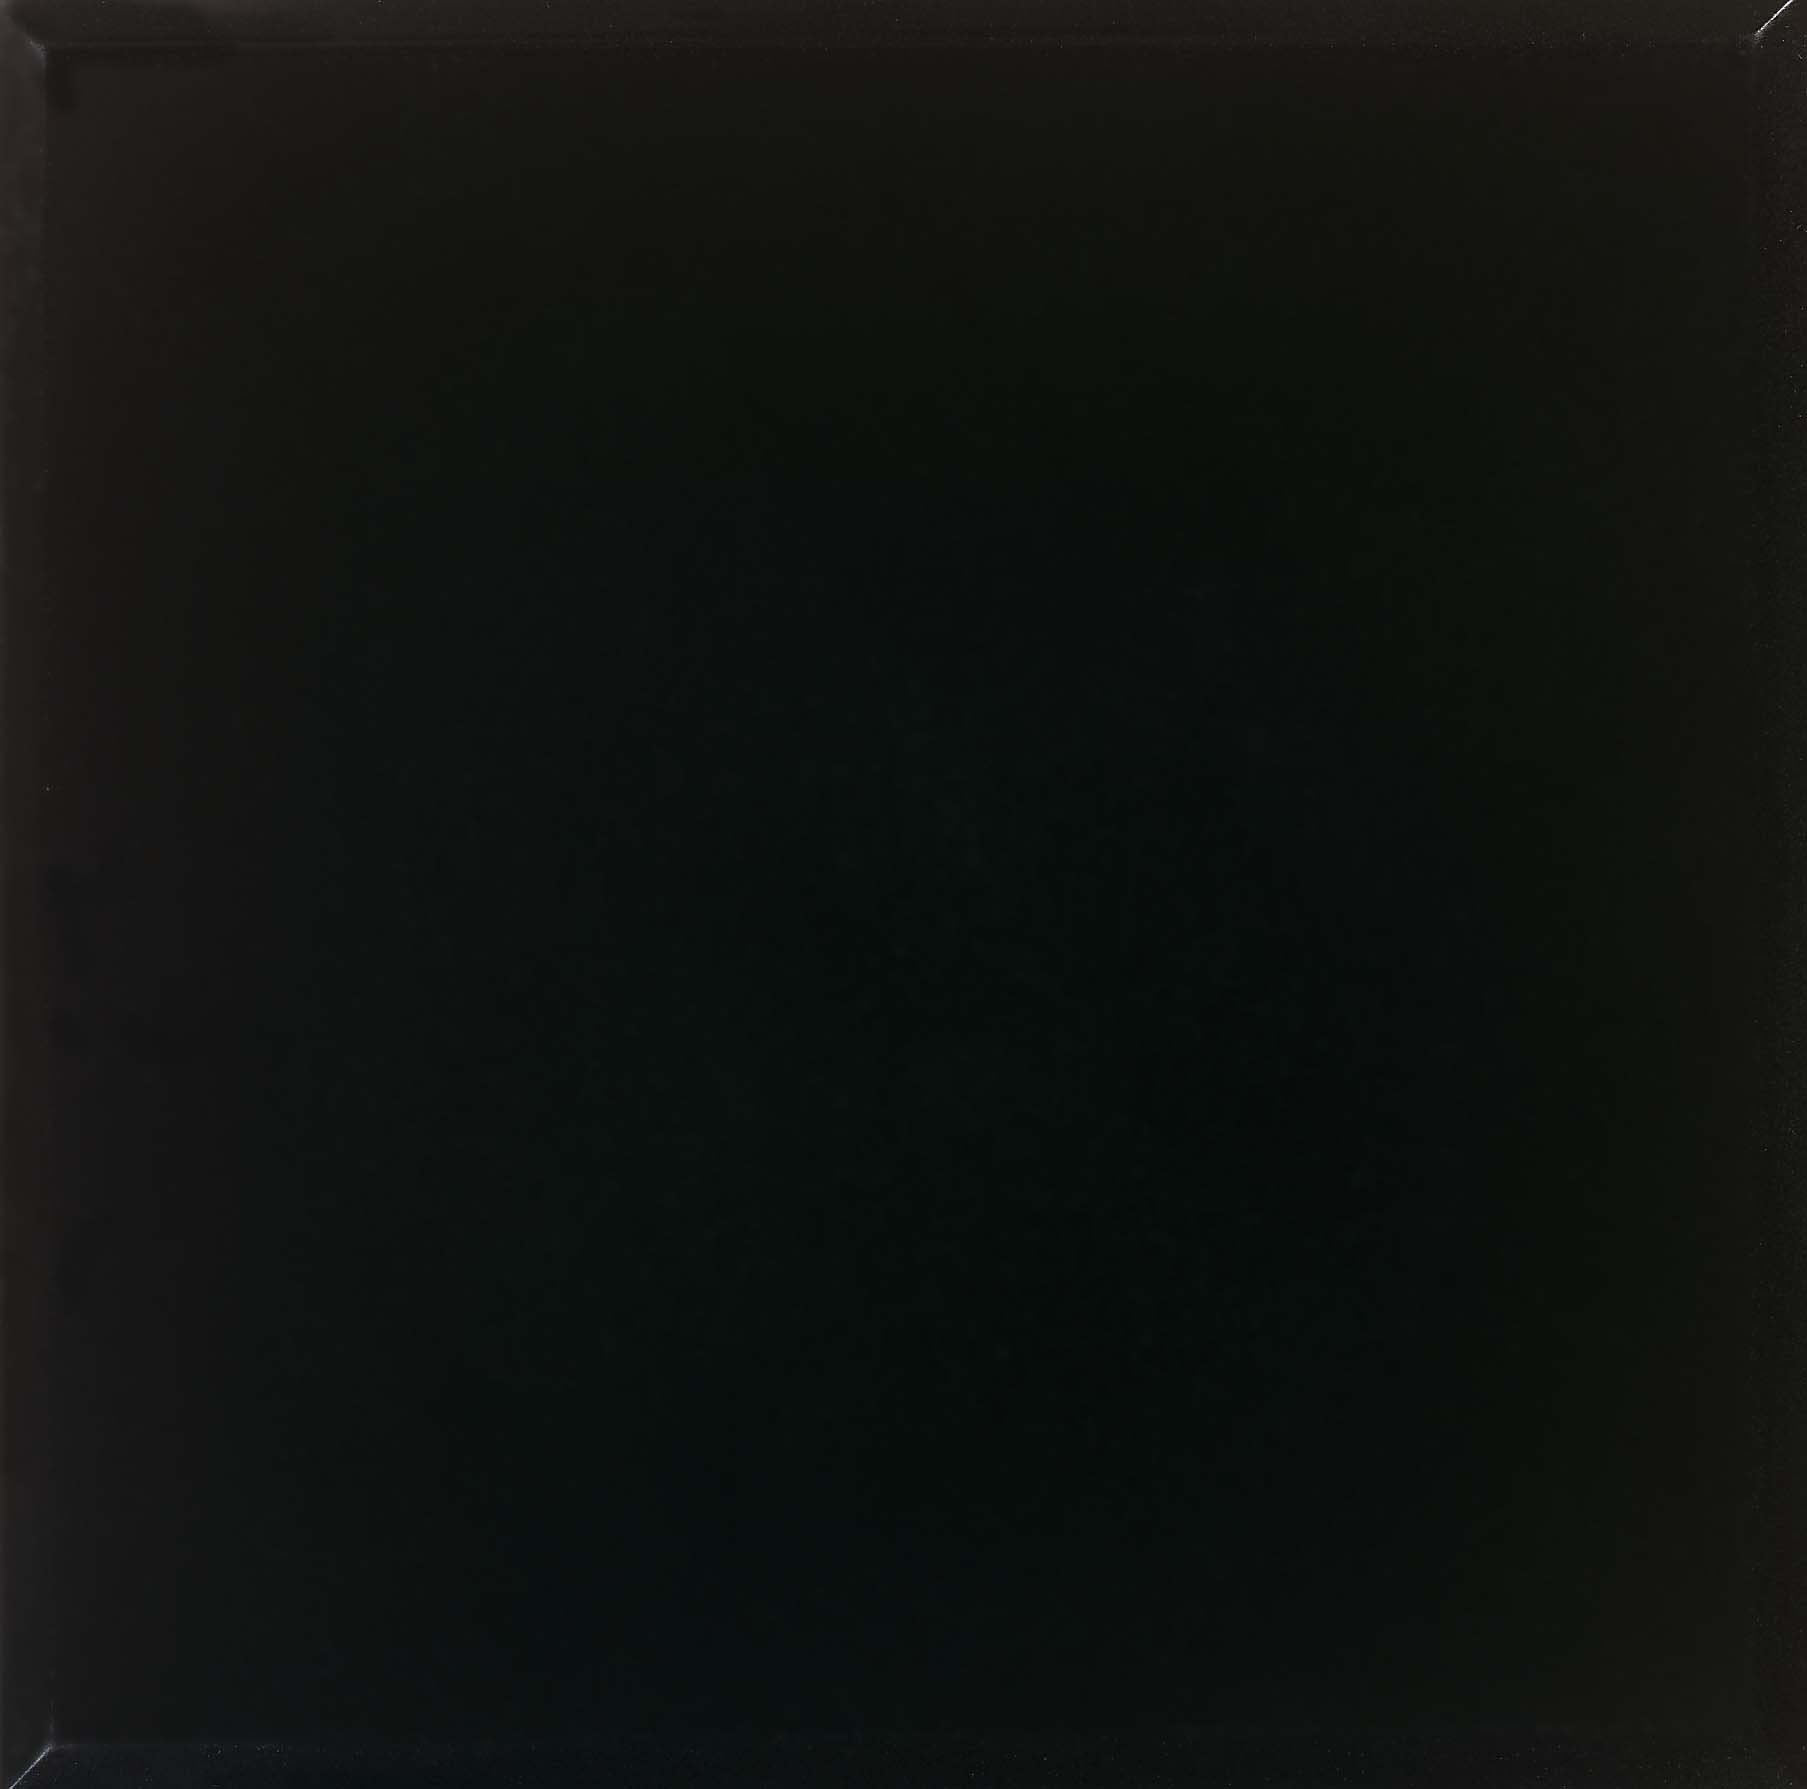 49+ Solid Black Wallpaper on WallpaperSafari